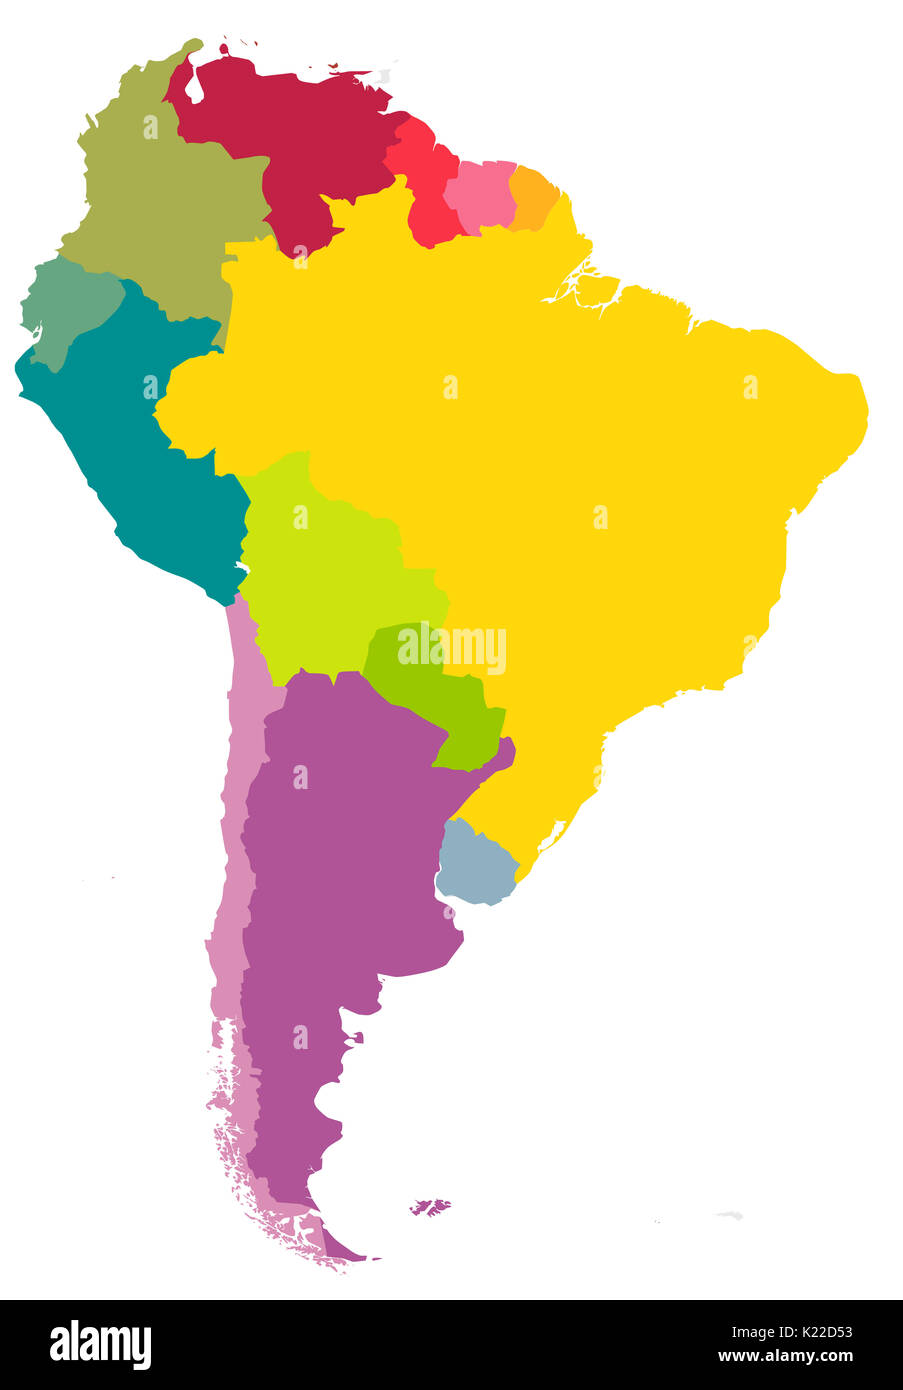 Continente situado principalmente en el hemisferio sur, entre América Central y el Cabo de Hornos. Representa el 12% de tierra seca de la tierra. Foto de stock